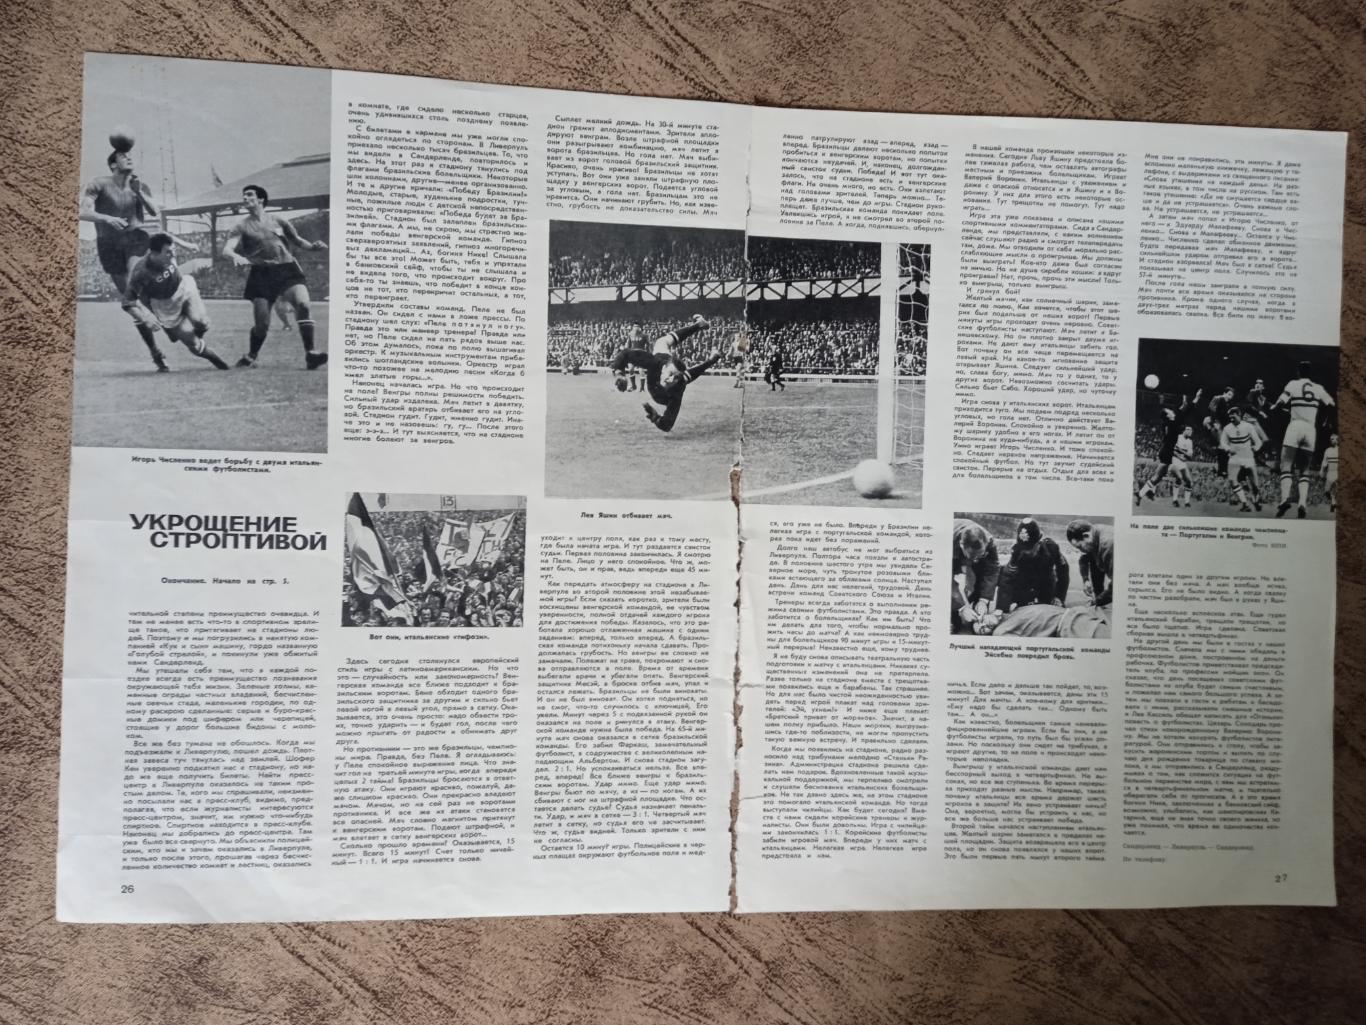 Статья.Футбол.Чемпионат мира 1966.Англия.Журнал Огонек 1966 г. (1).